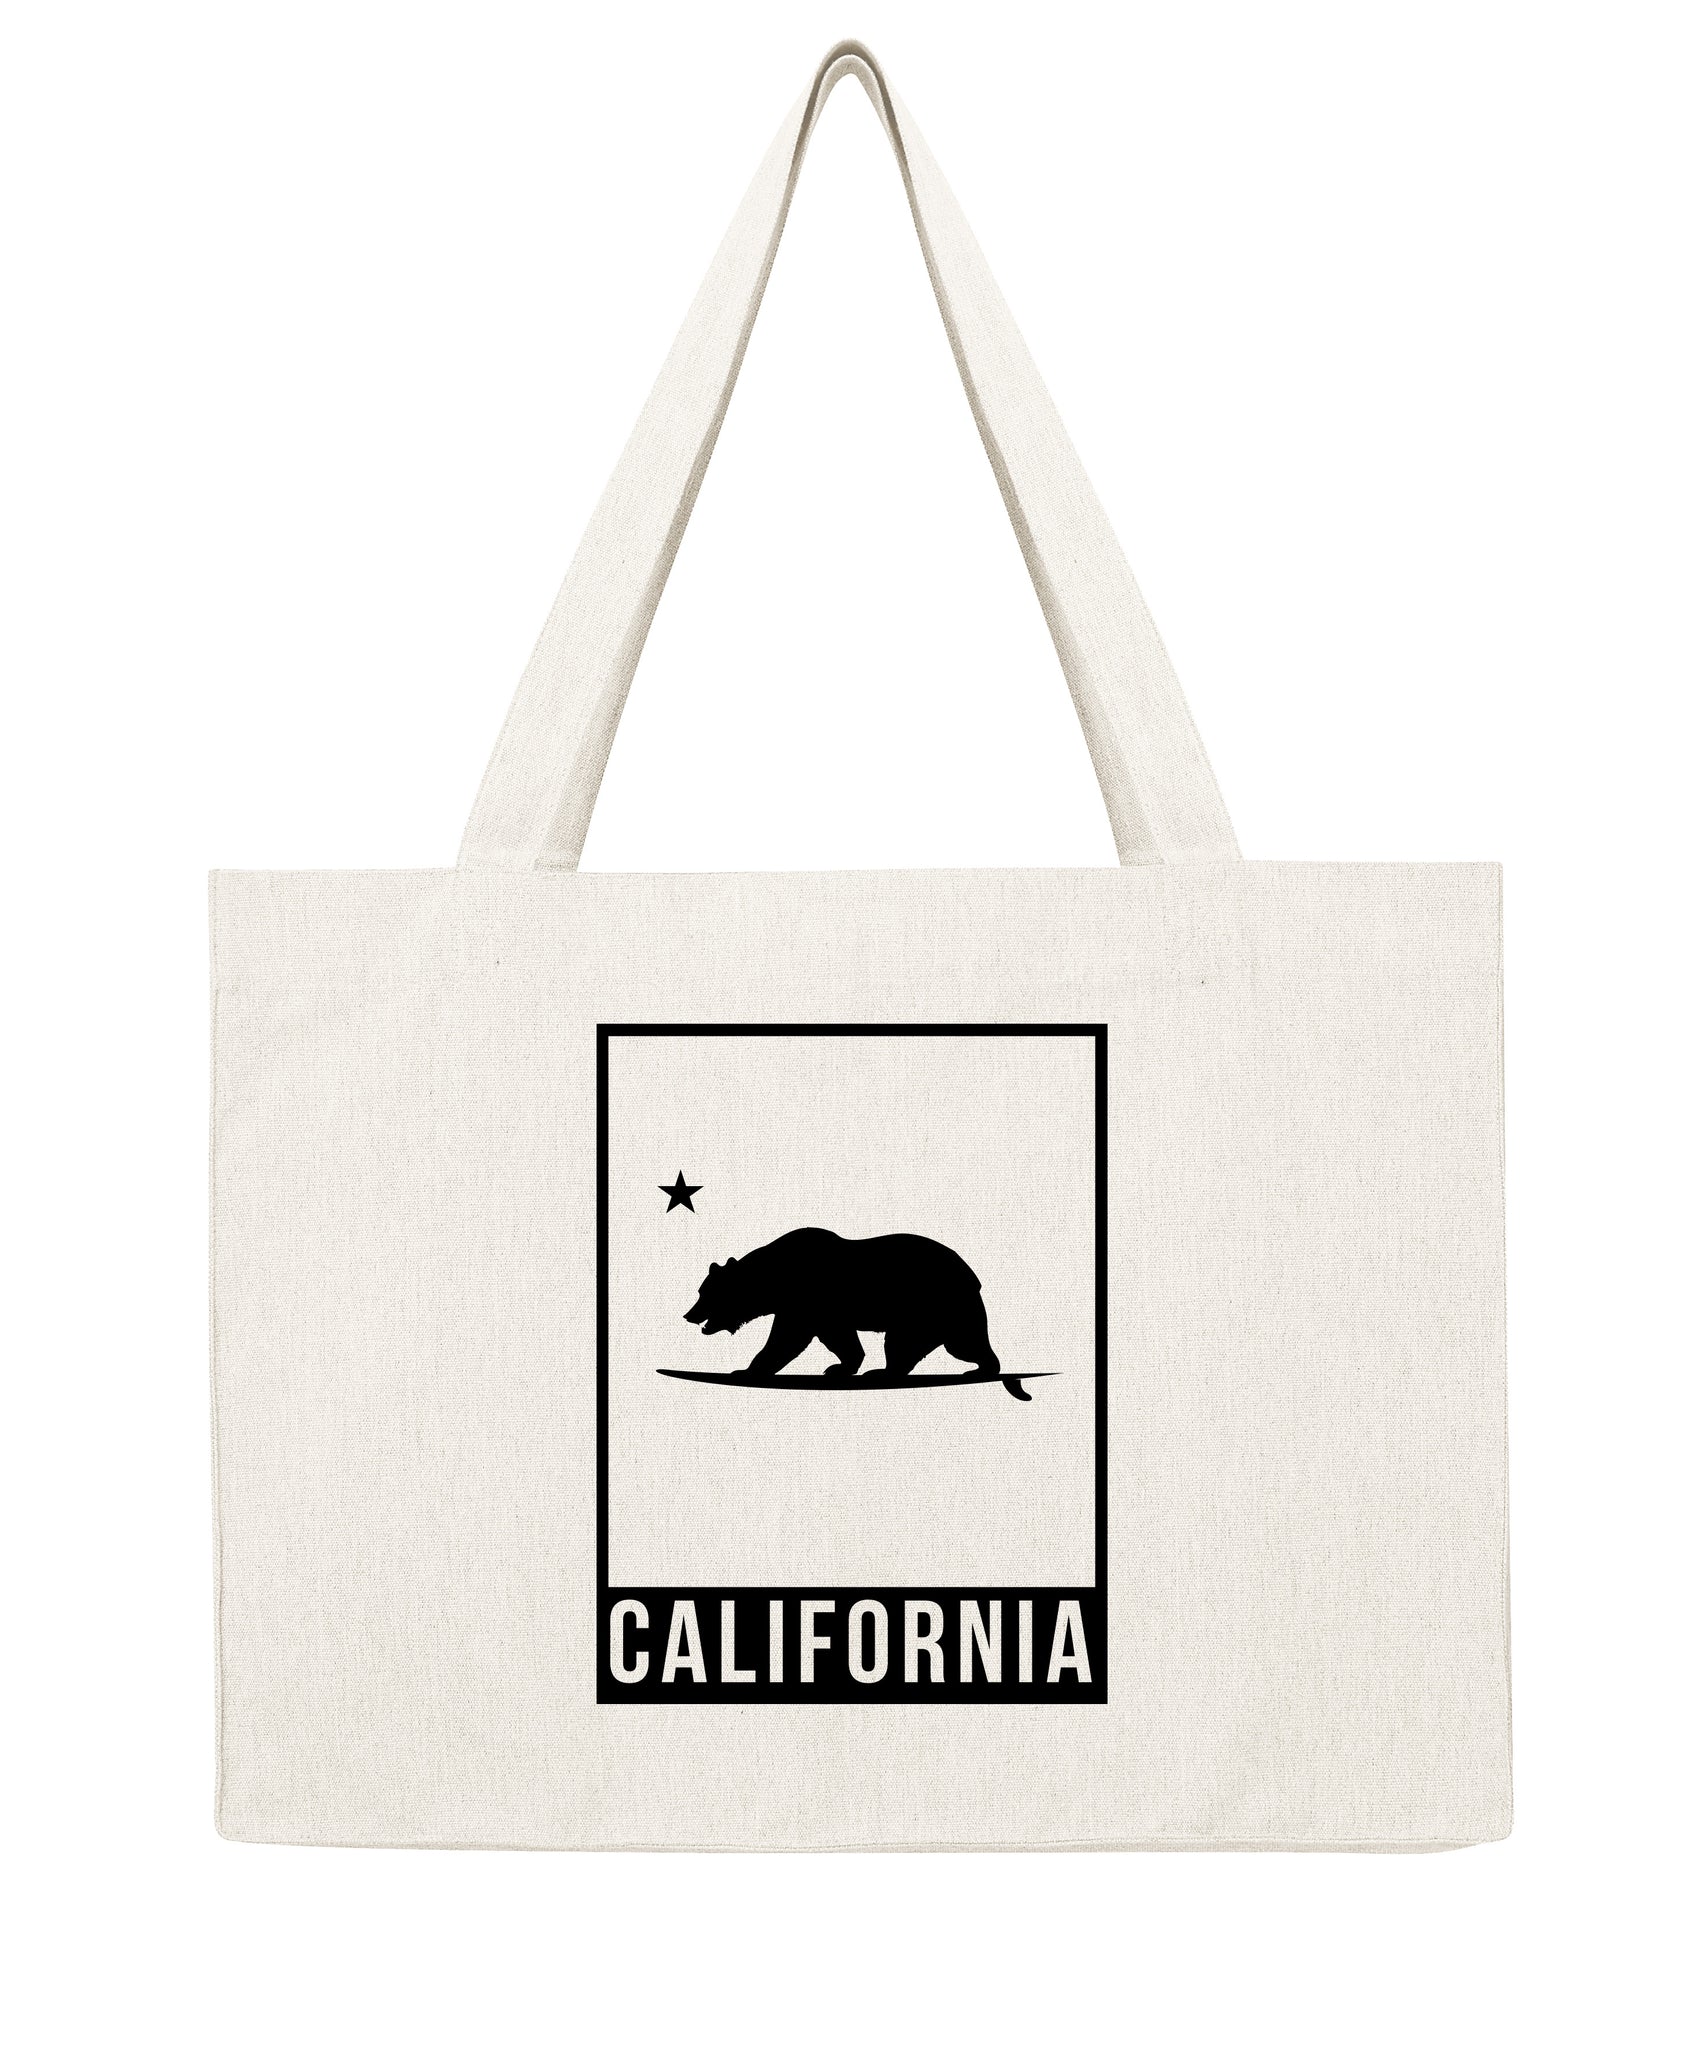 California Bear cadre - Shopping bag-Sacs-Atelier Amelot